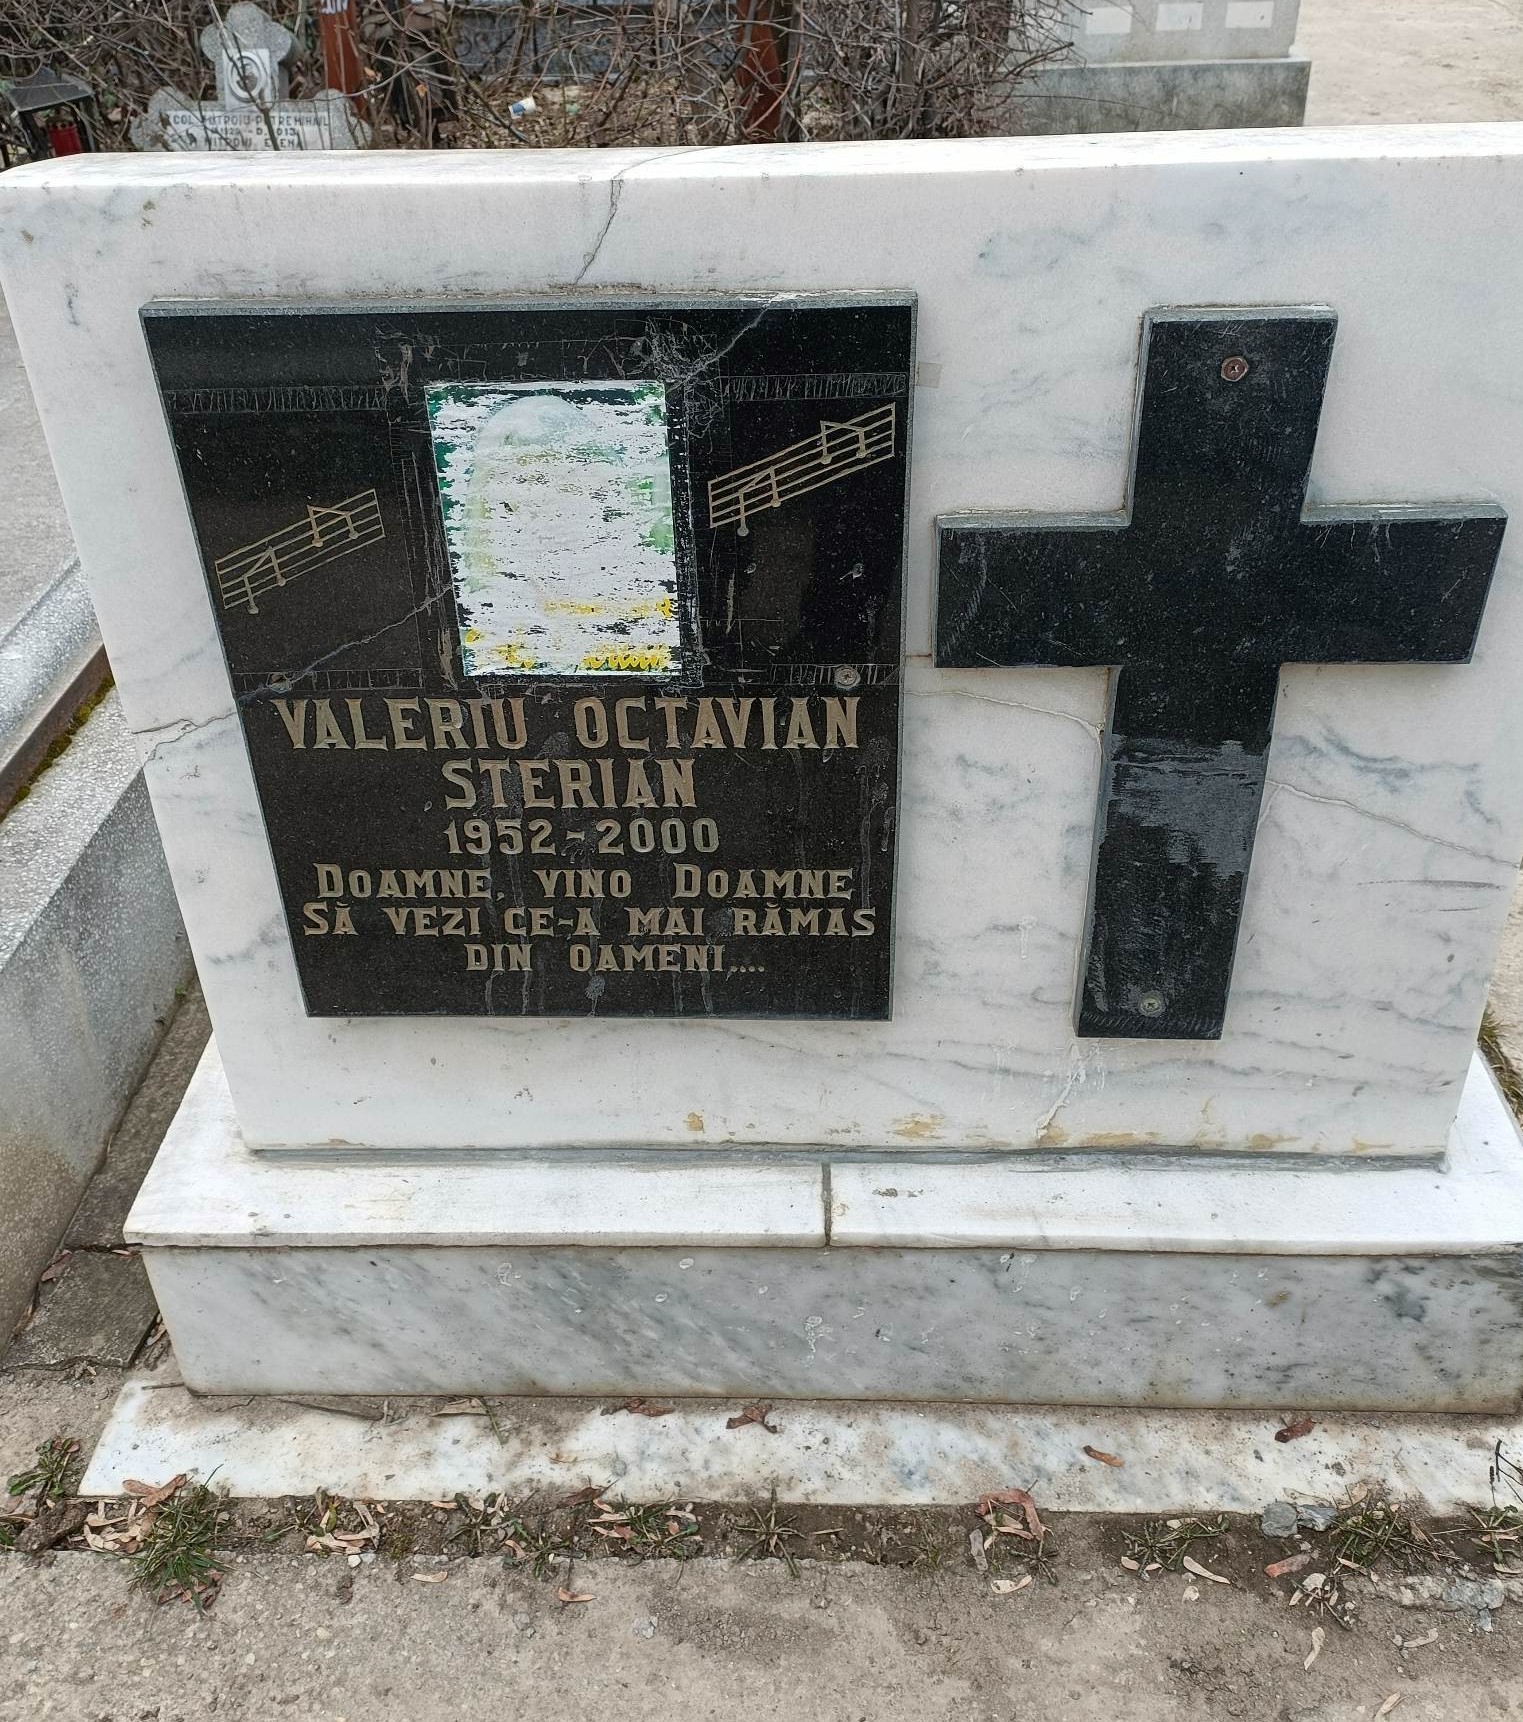 Cum a ajuns să arate mormântul lui Valeriu Octavian Sterian + mesajul scris pe placa funerară. Povestea tulburătoare a legendei muzicii folk. EXCLUSIV